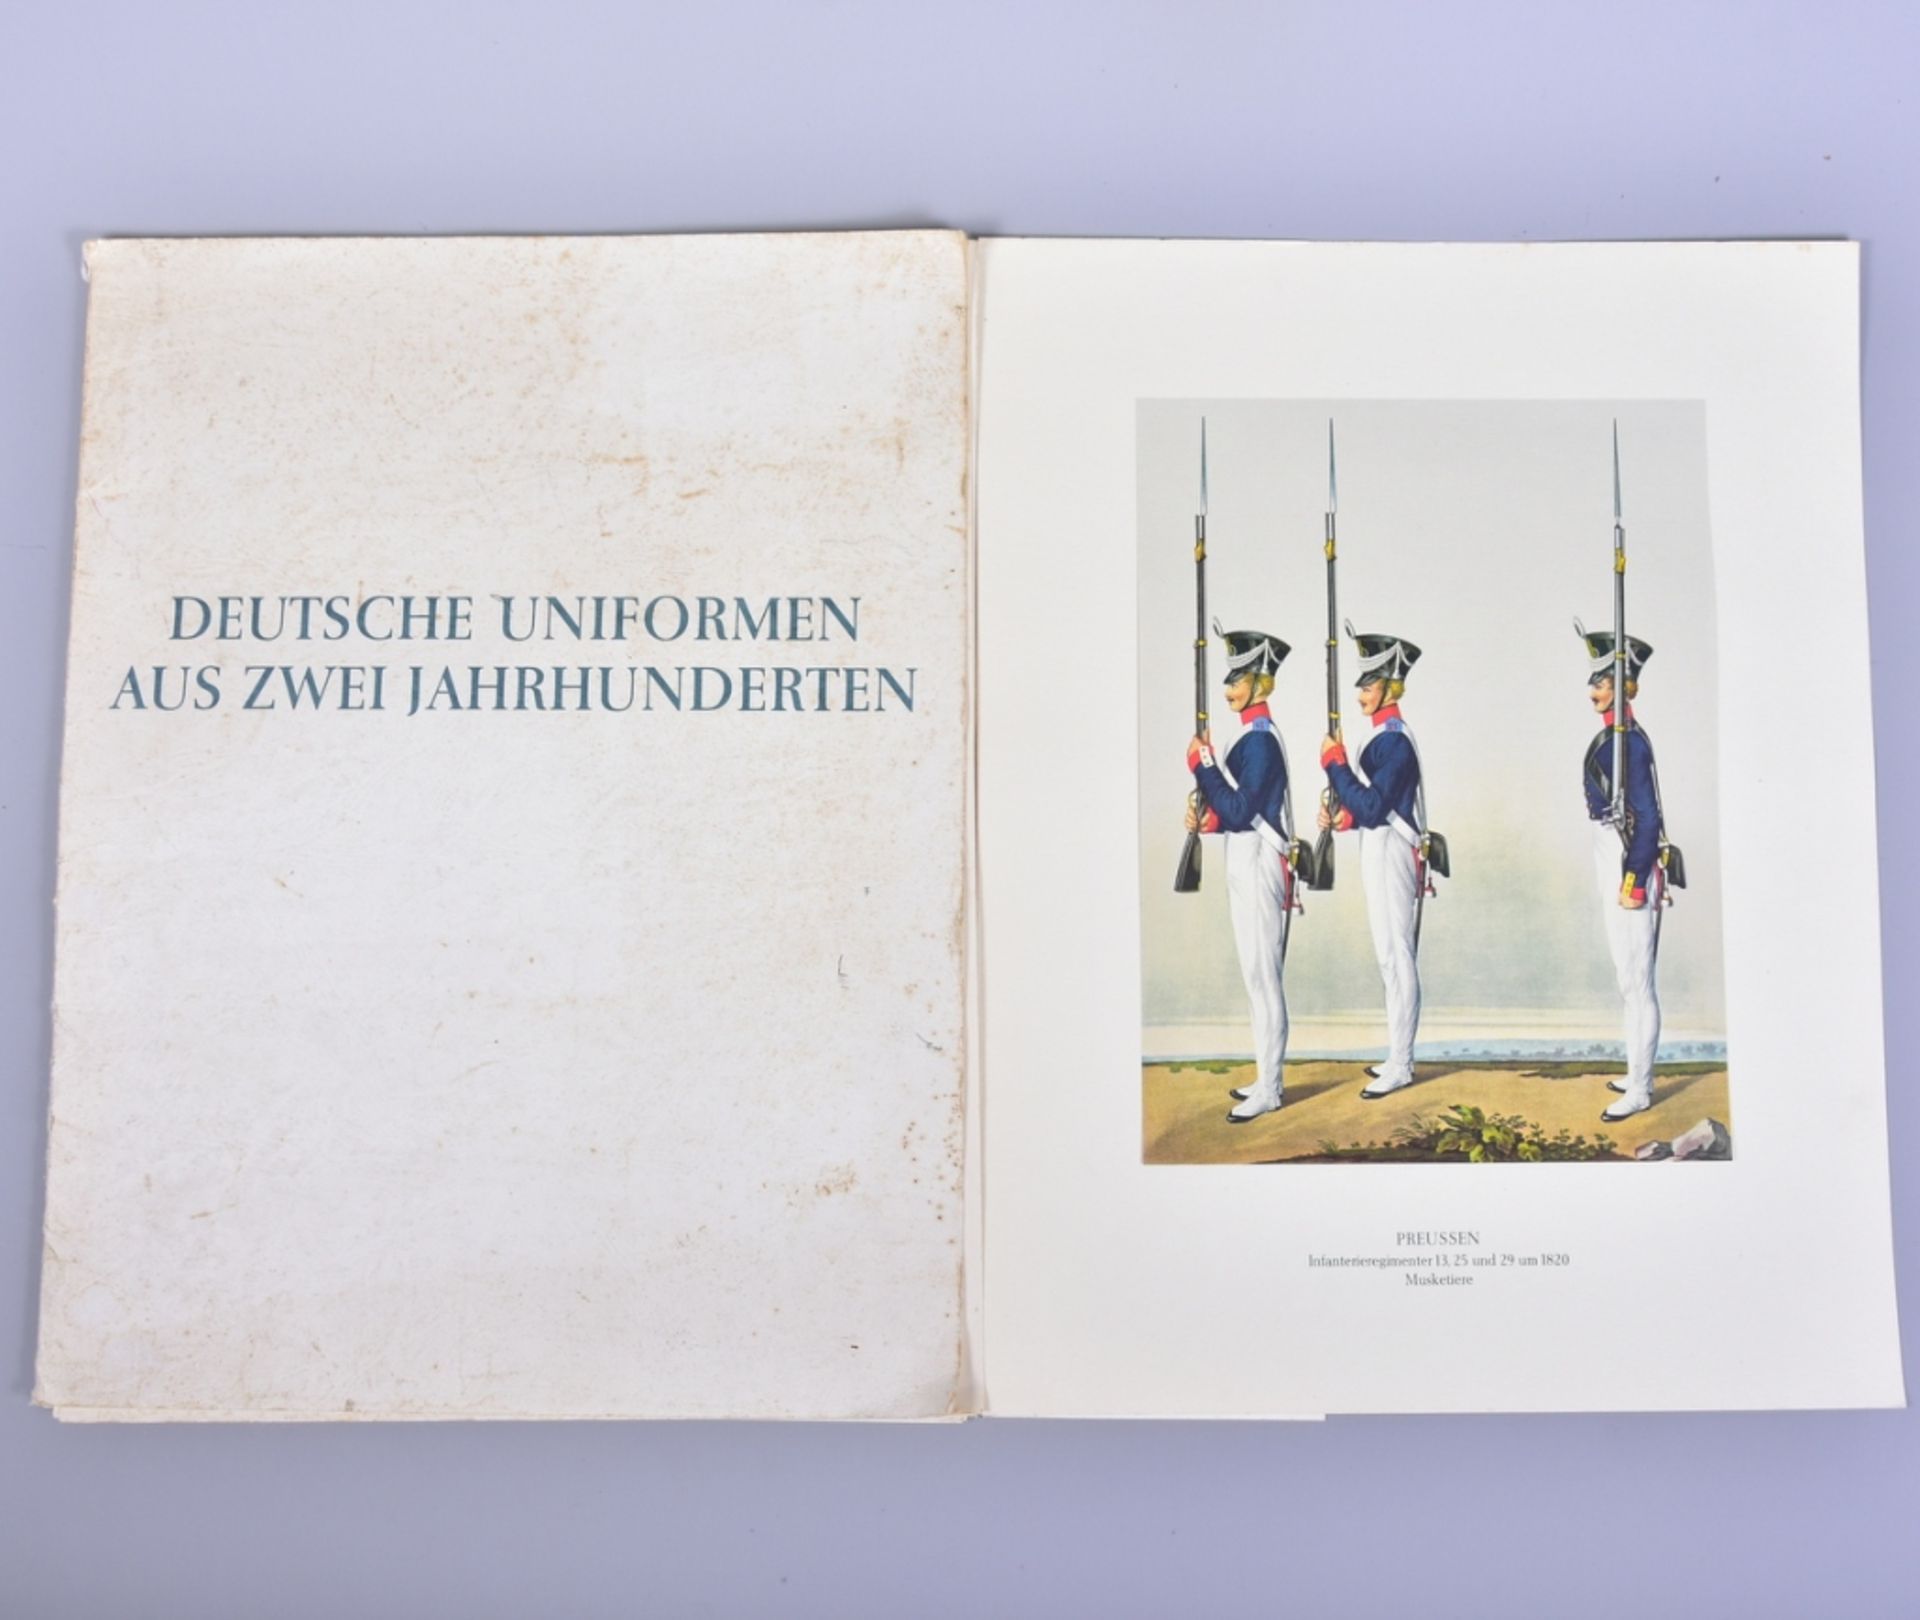 Mappe ,,Deutsche Uniformen aus zwei Jahrhunderten", Hohwacht - Edition, Bad Godesberg 1961, Format